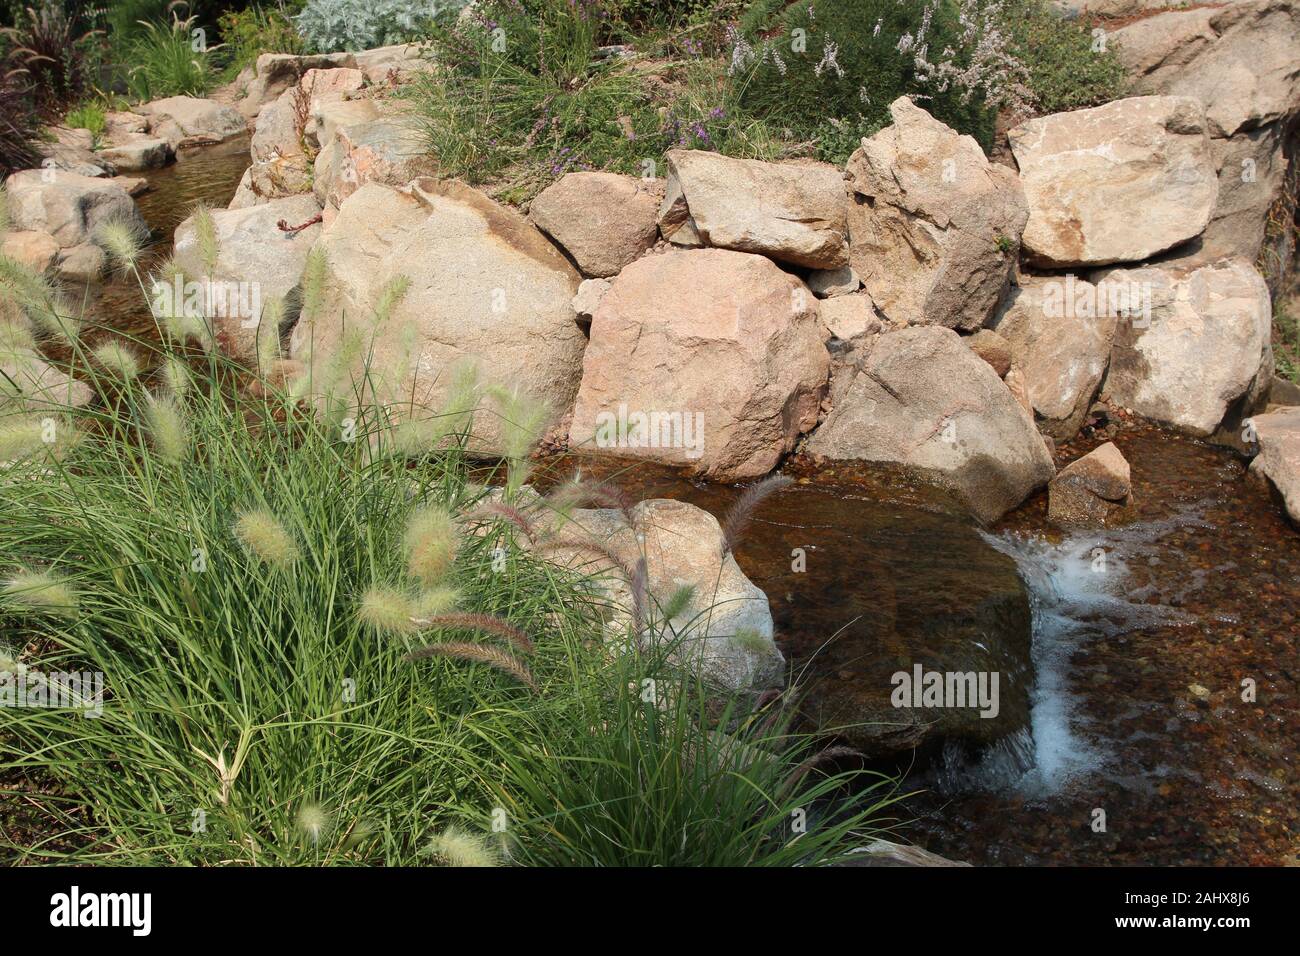 Einen sanften Luftstrom über einen Felsen Bett fließt, von Felsen gesäumt, Brunnen Gras, Sträuchern und Wildblumen in Colorado, USA Stockfoto